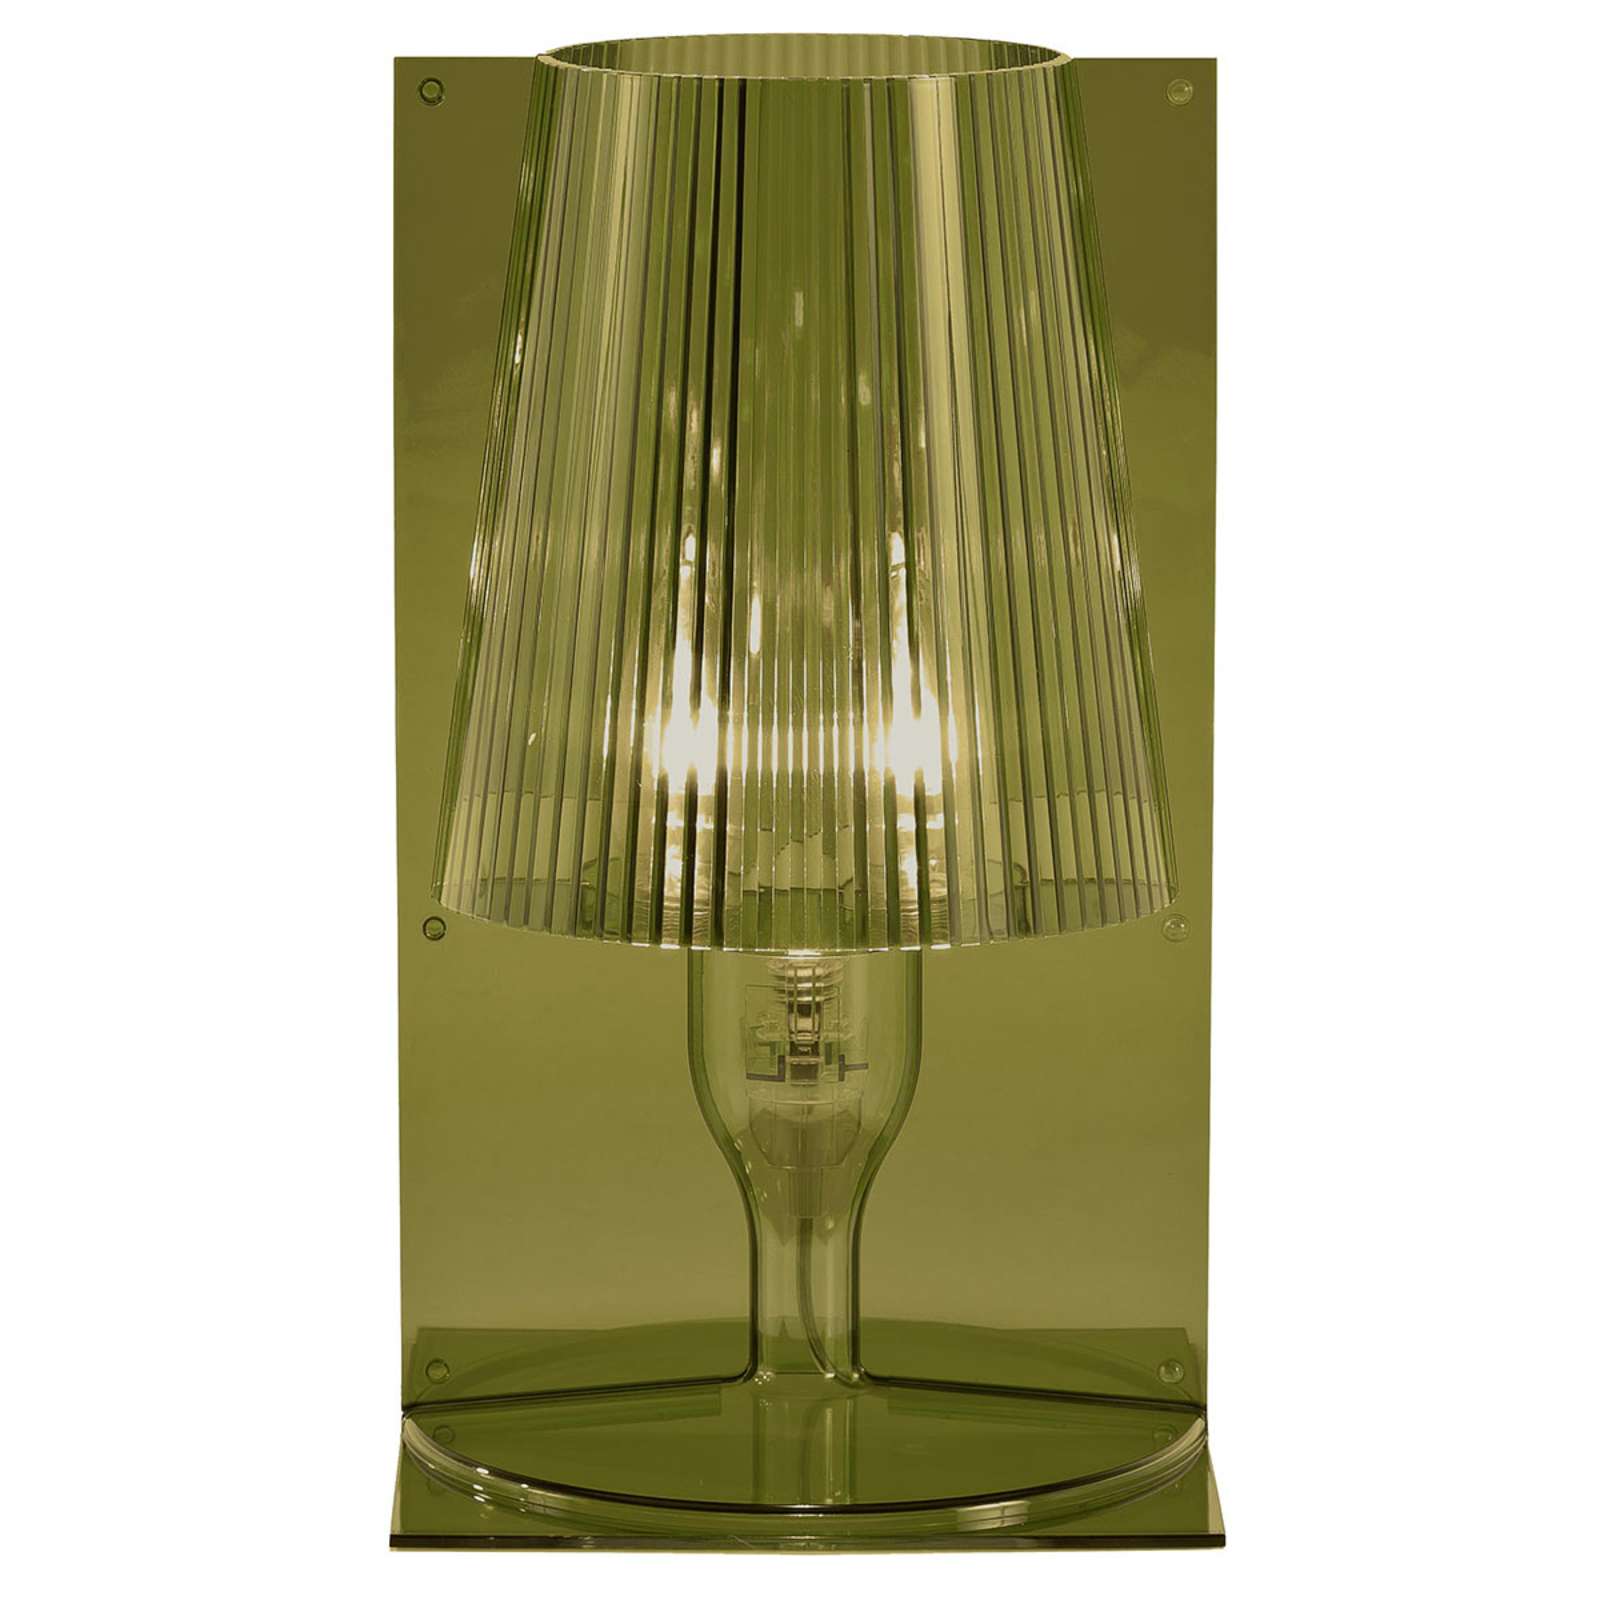 Kartell Take lampe à poser de designer, vert olive